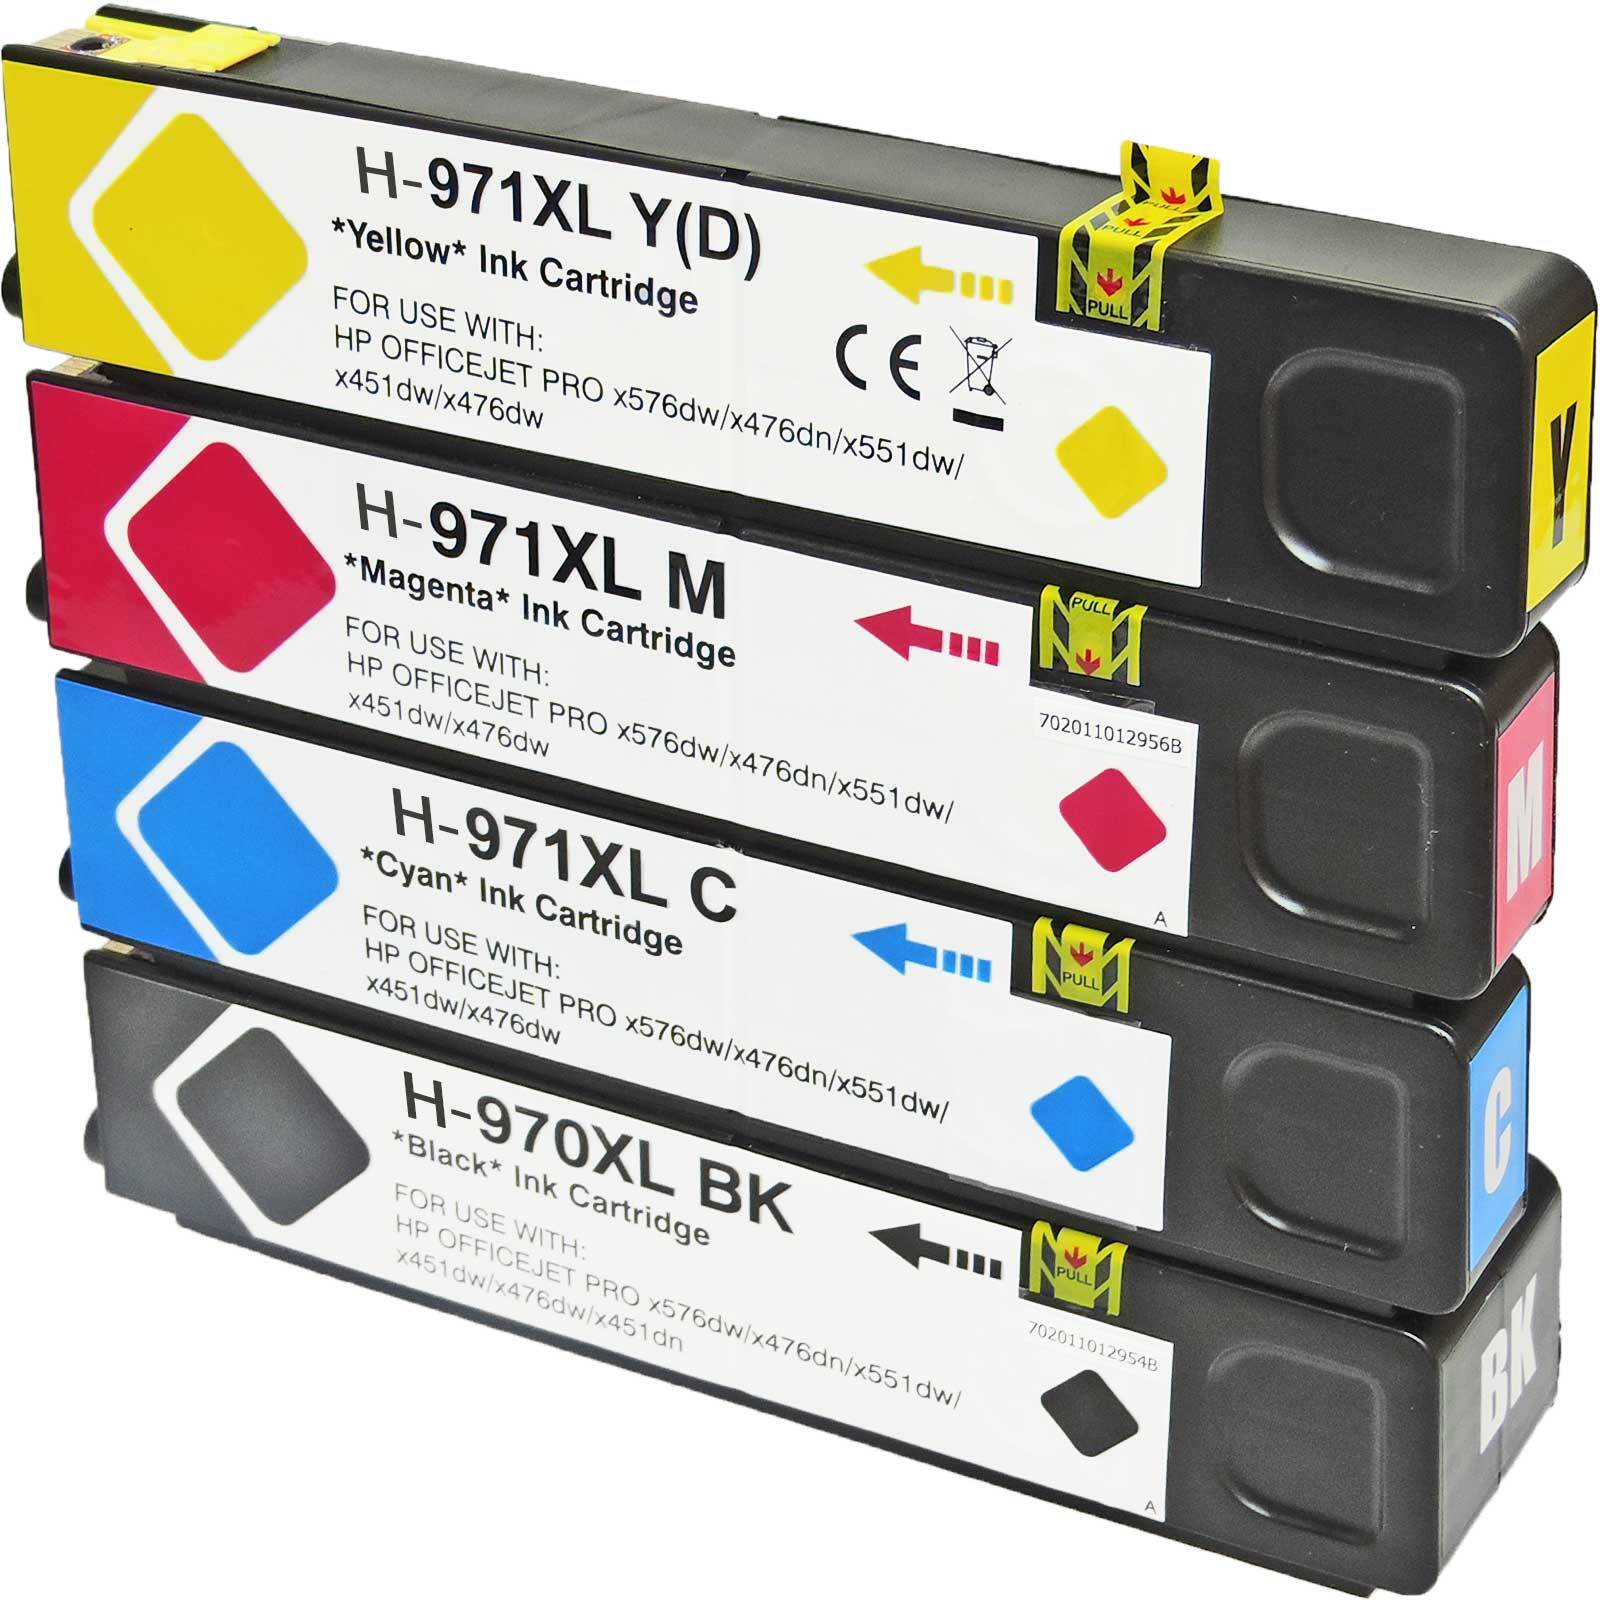 4er Set Tinte ersetzt HP 970XL, 971XL Druckerpatronen alle Farben für HP OfficeJet Pro X 450 Series, X 451dn, 451 dw, 470 Series, 476dn, 476dw, 551dw, 576 dw